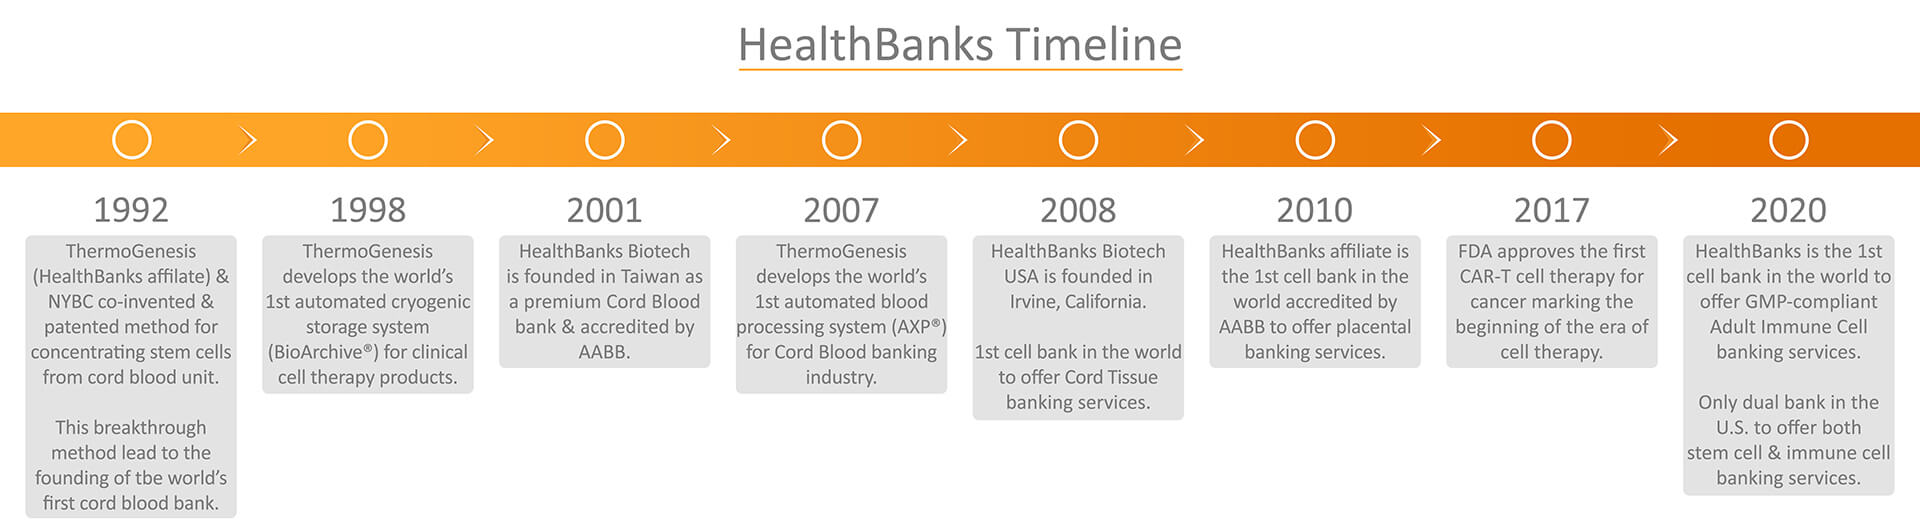 HealthBanks Timeline